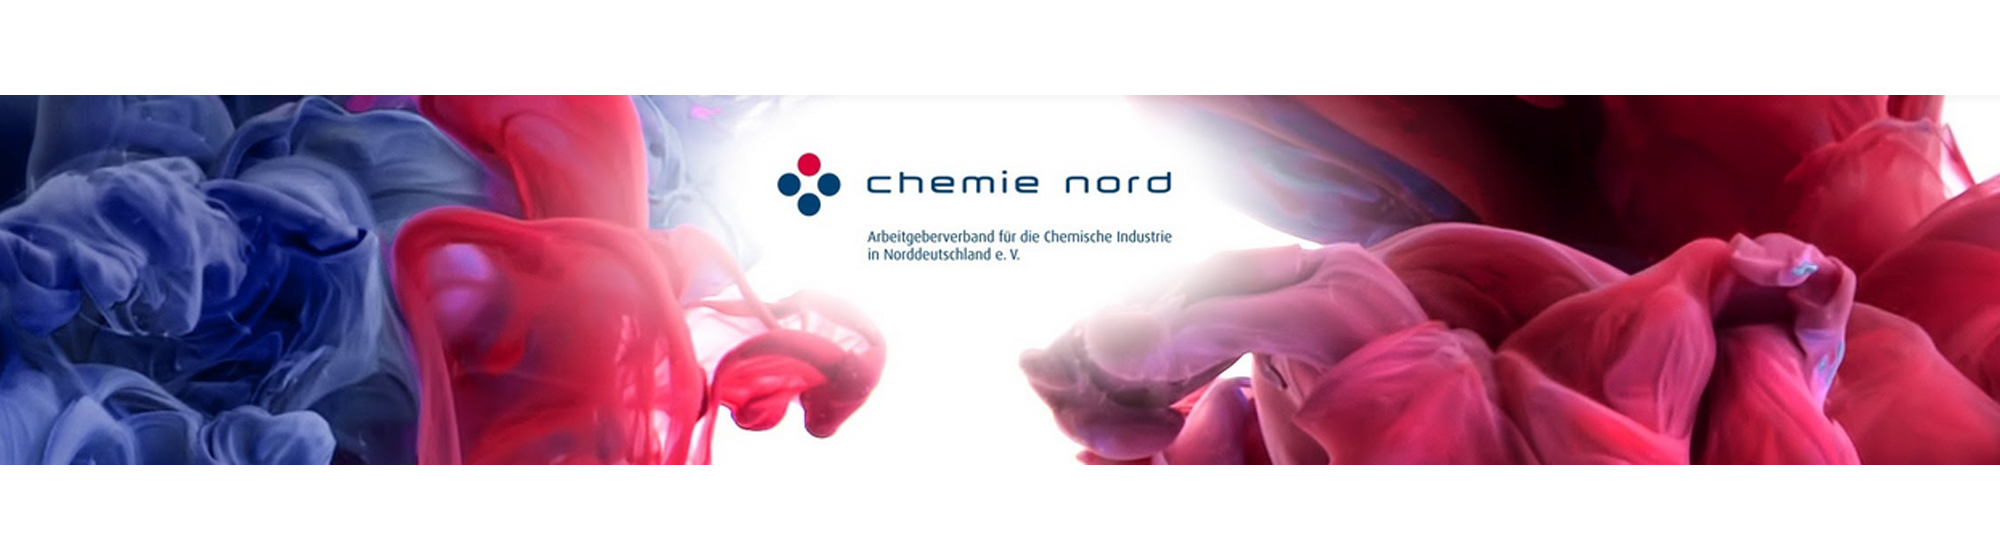 ChemieNord Arbeitgeberverband für die Chemische Industrie in Norddeutschland e.V.